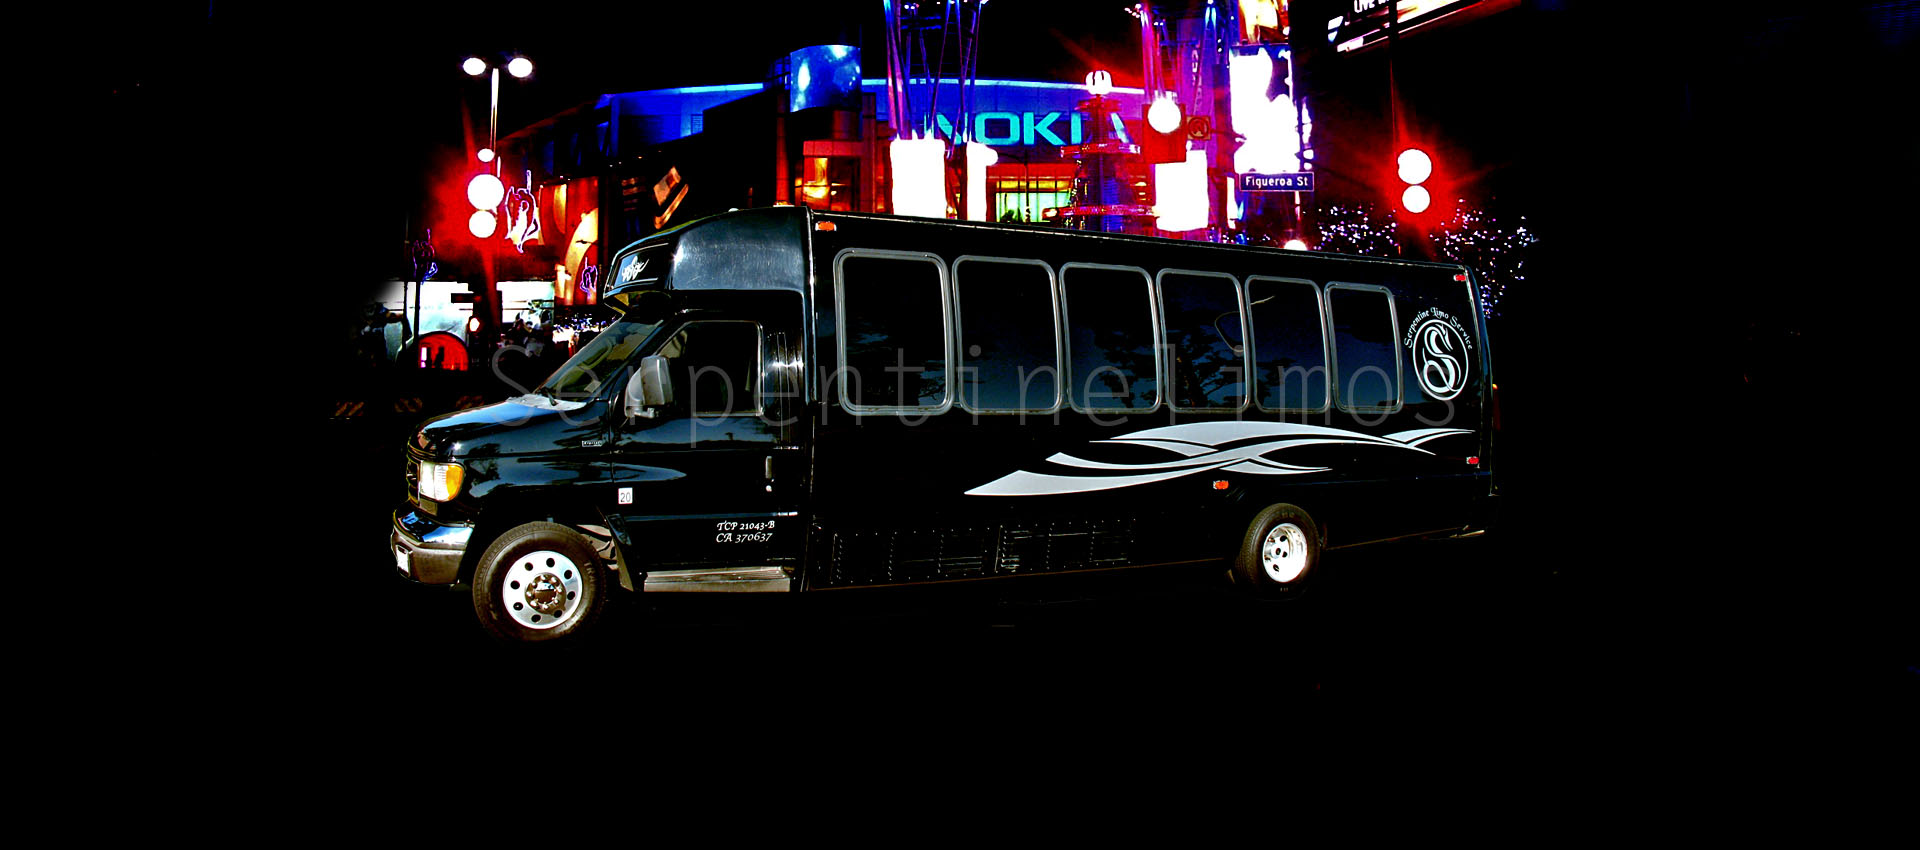 Los Angeles 20 Passenger E450 Party Bus Limousine